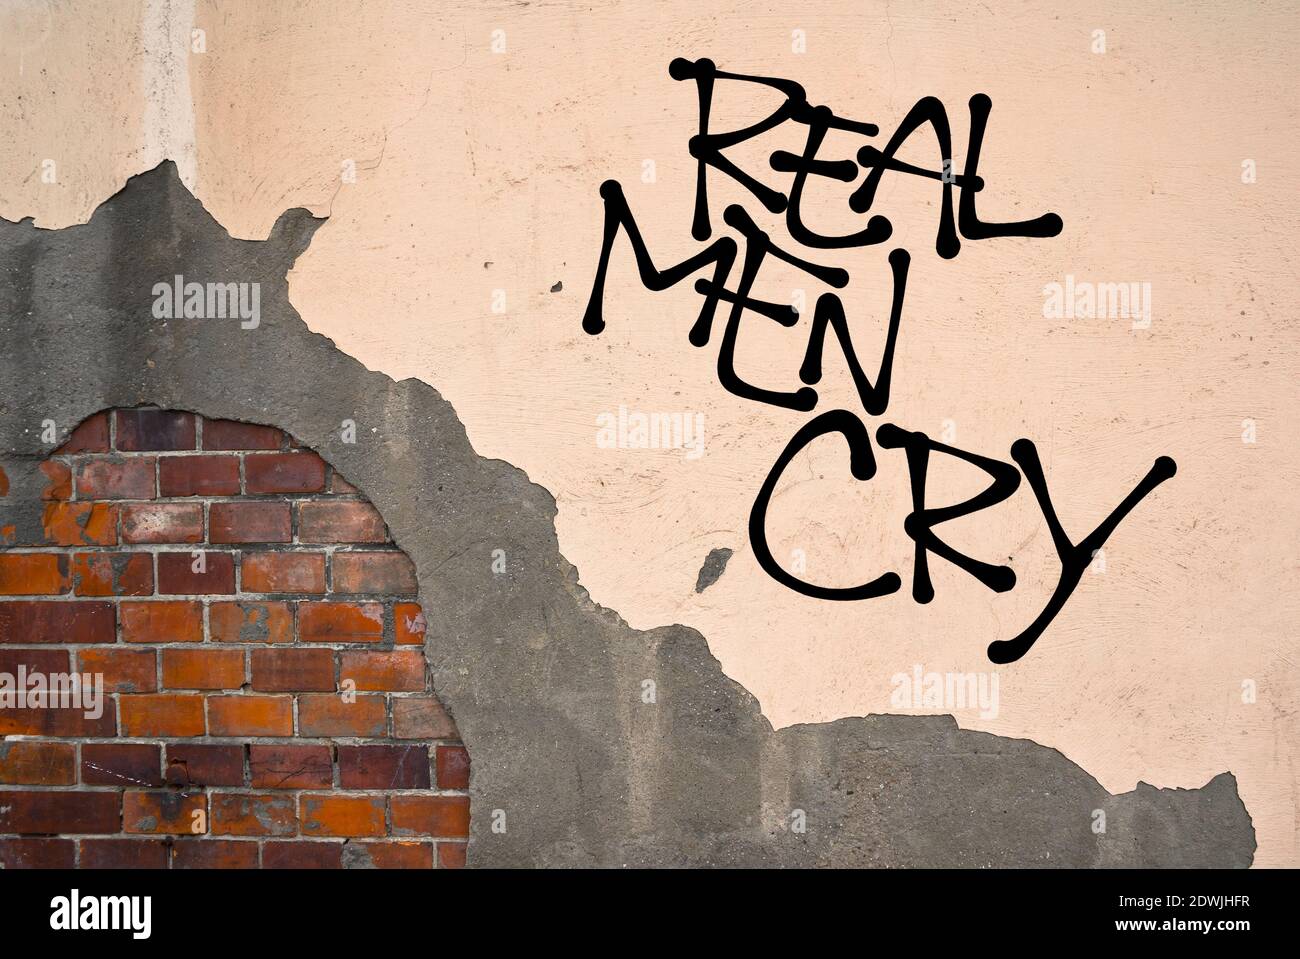 Real Men Cry - graffiti escrito a mano en la pared - lucha contra el estereotipo del hombre débil - supresión y. represión de emociones y emociones Foto de stock